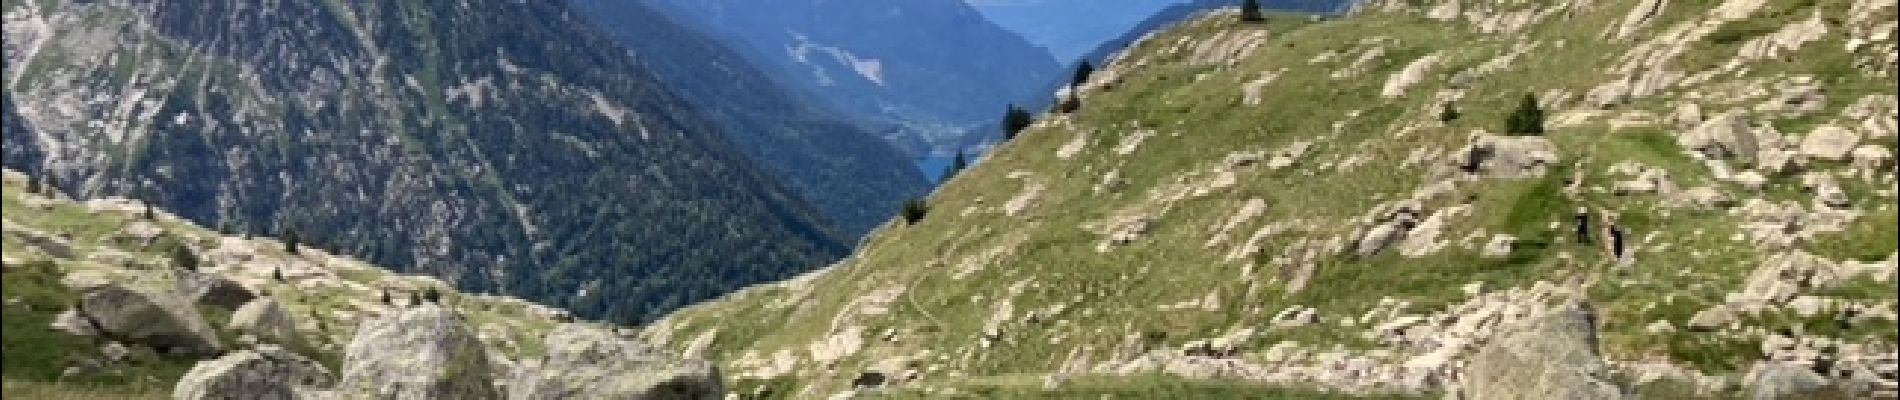 Trail Walking Vielha e Mijaran - Lacs Redon et Rius depuis ES Morassi dera,Val de Molières - Photo